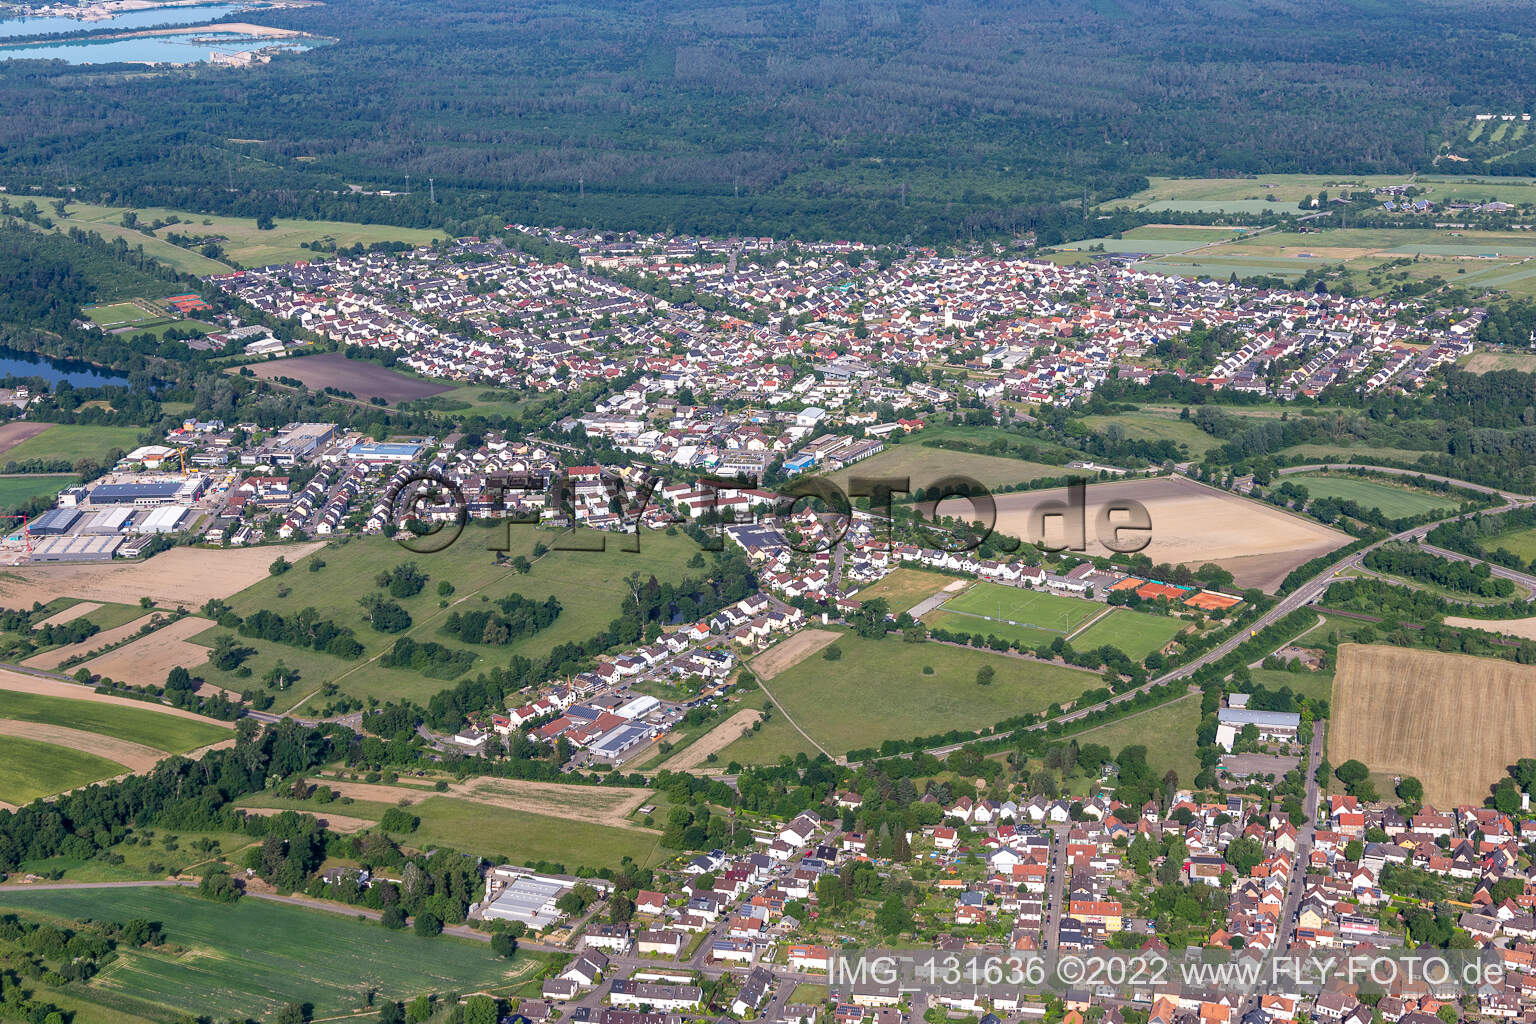 Quartier Bruchhausen in Ettlingen dans le département Bade-Wurtemberg, Allemagne hors des airs